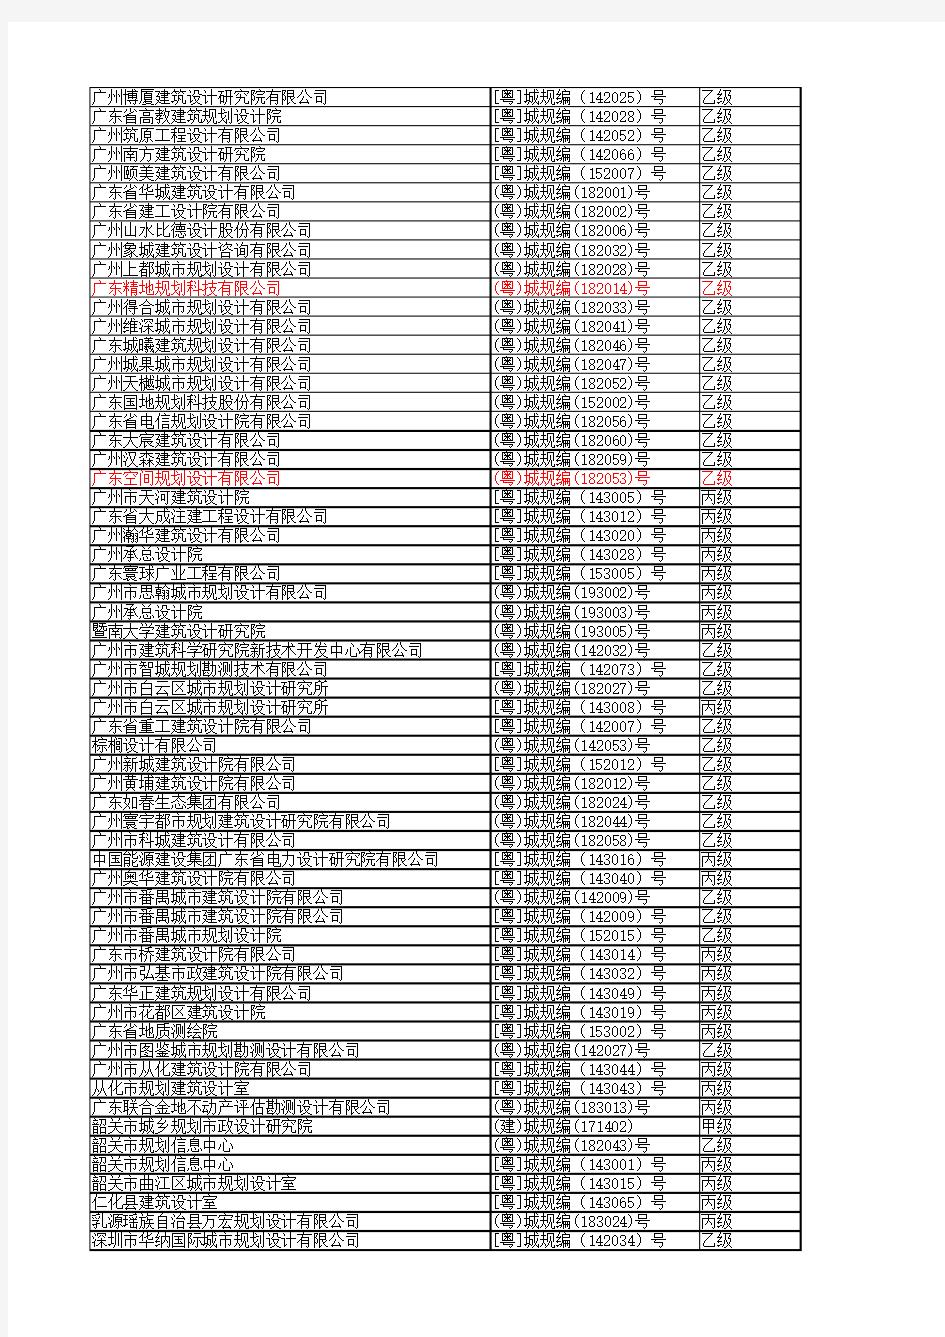 广东省城乡规划编制资质企业名单(截至2019年)